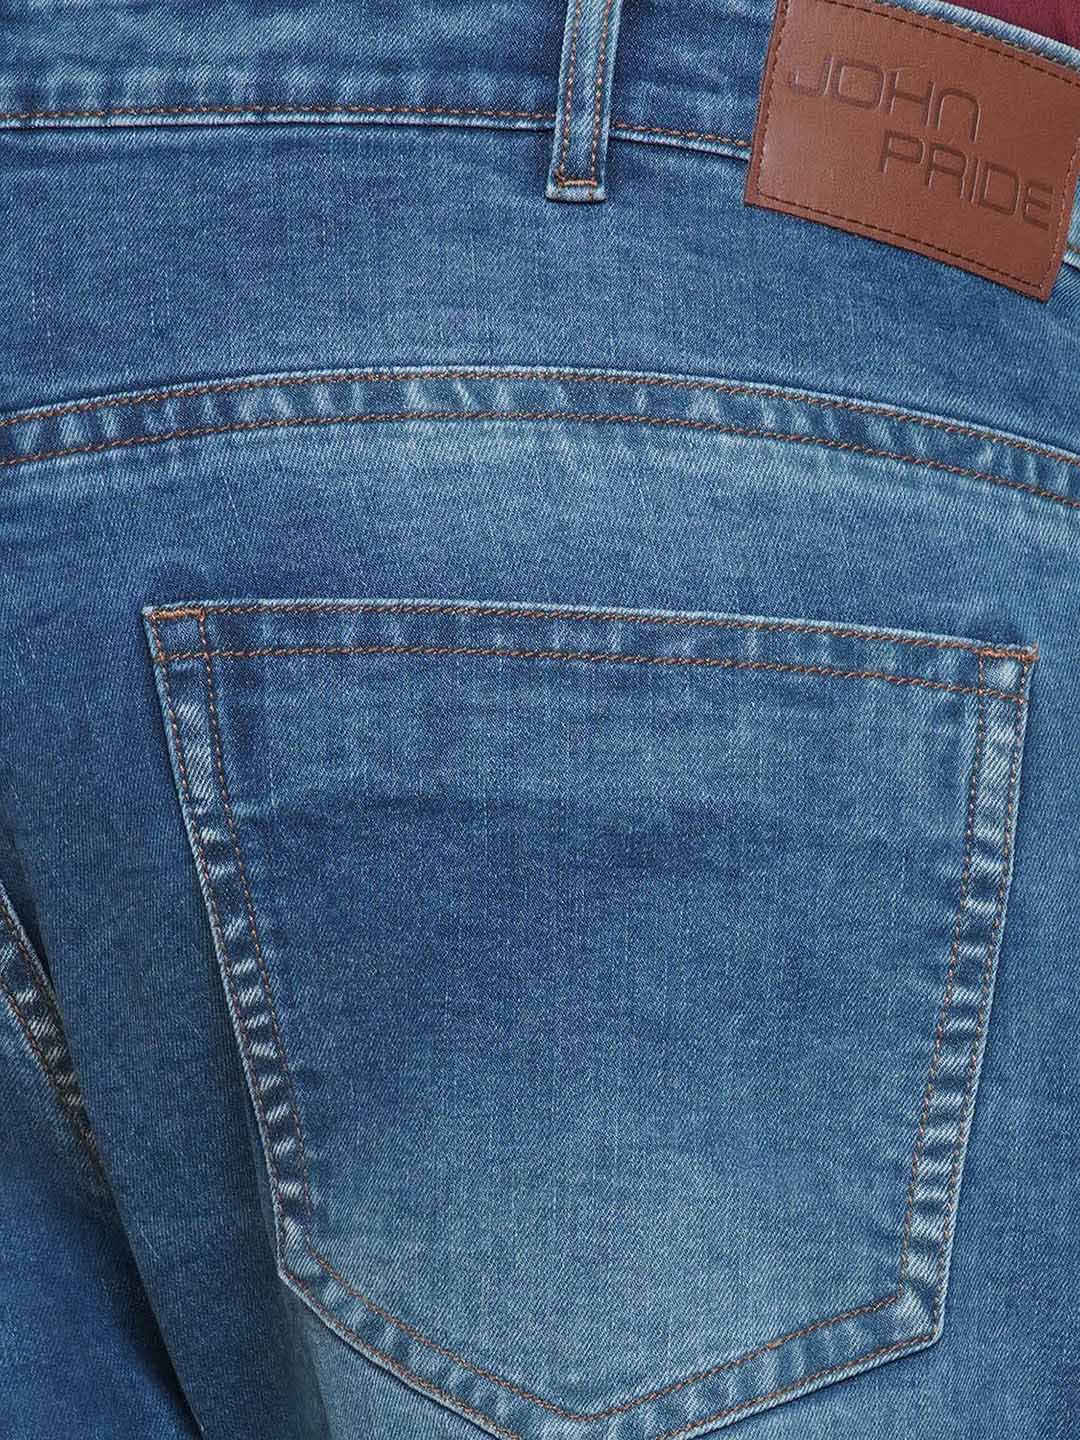 bottomwear/jeans/PJPJ6091/pjpj6091-2.jpg